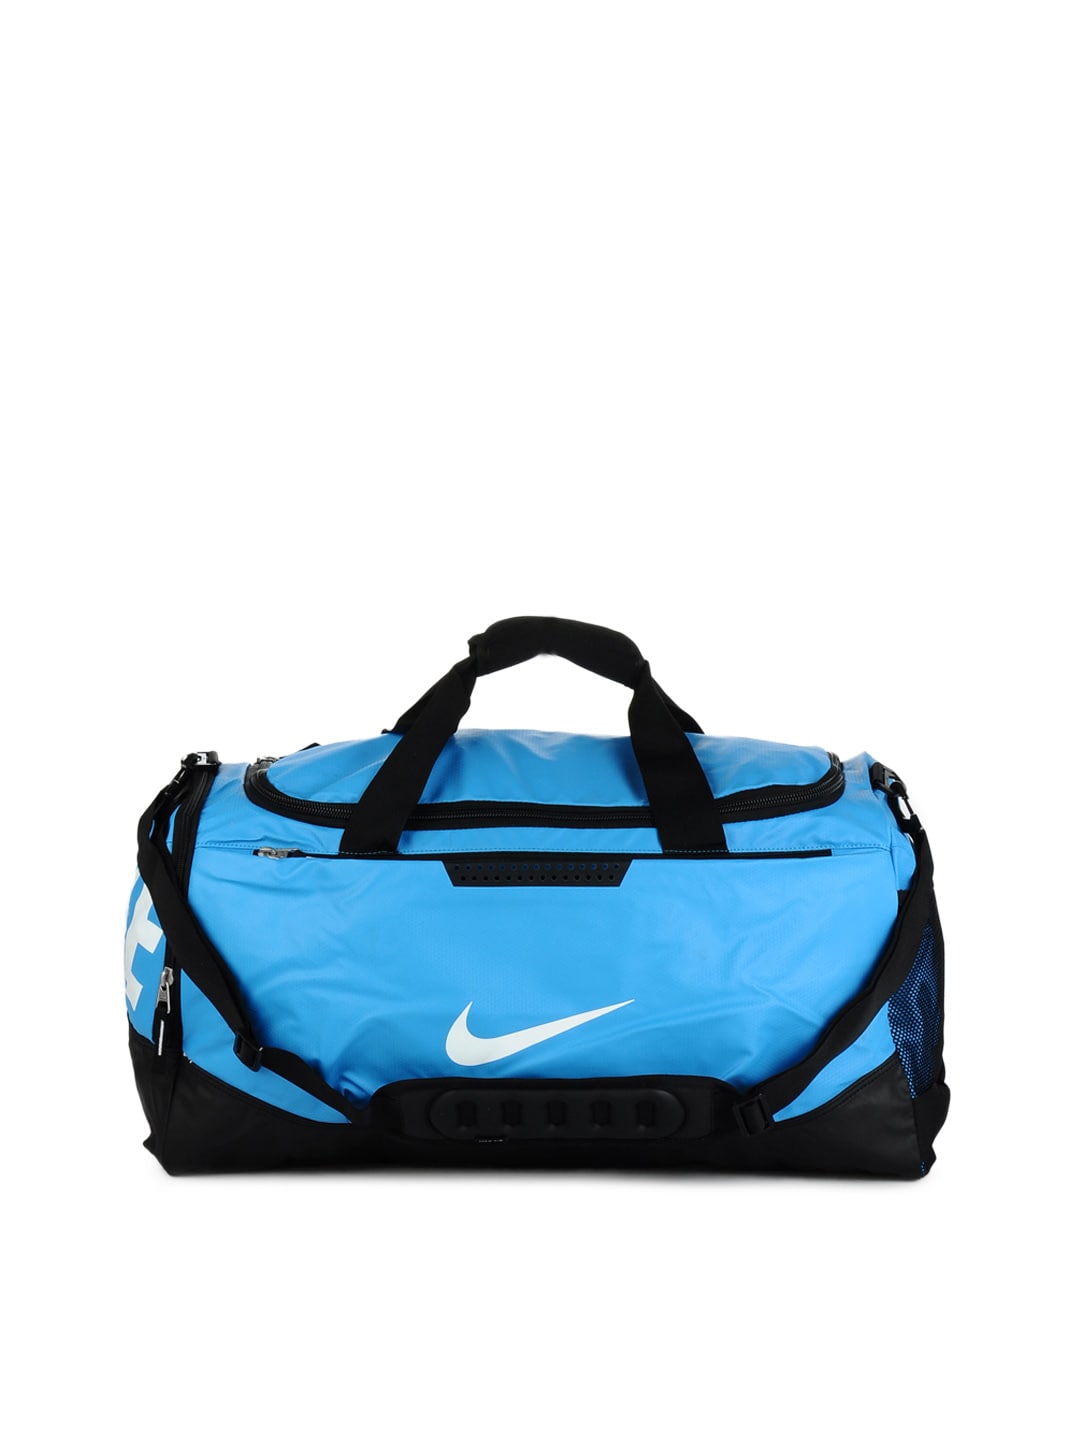 Buy Nike Men Blue Duffle Bag - 294 - Accessories for Men - 66754